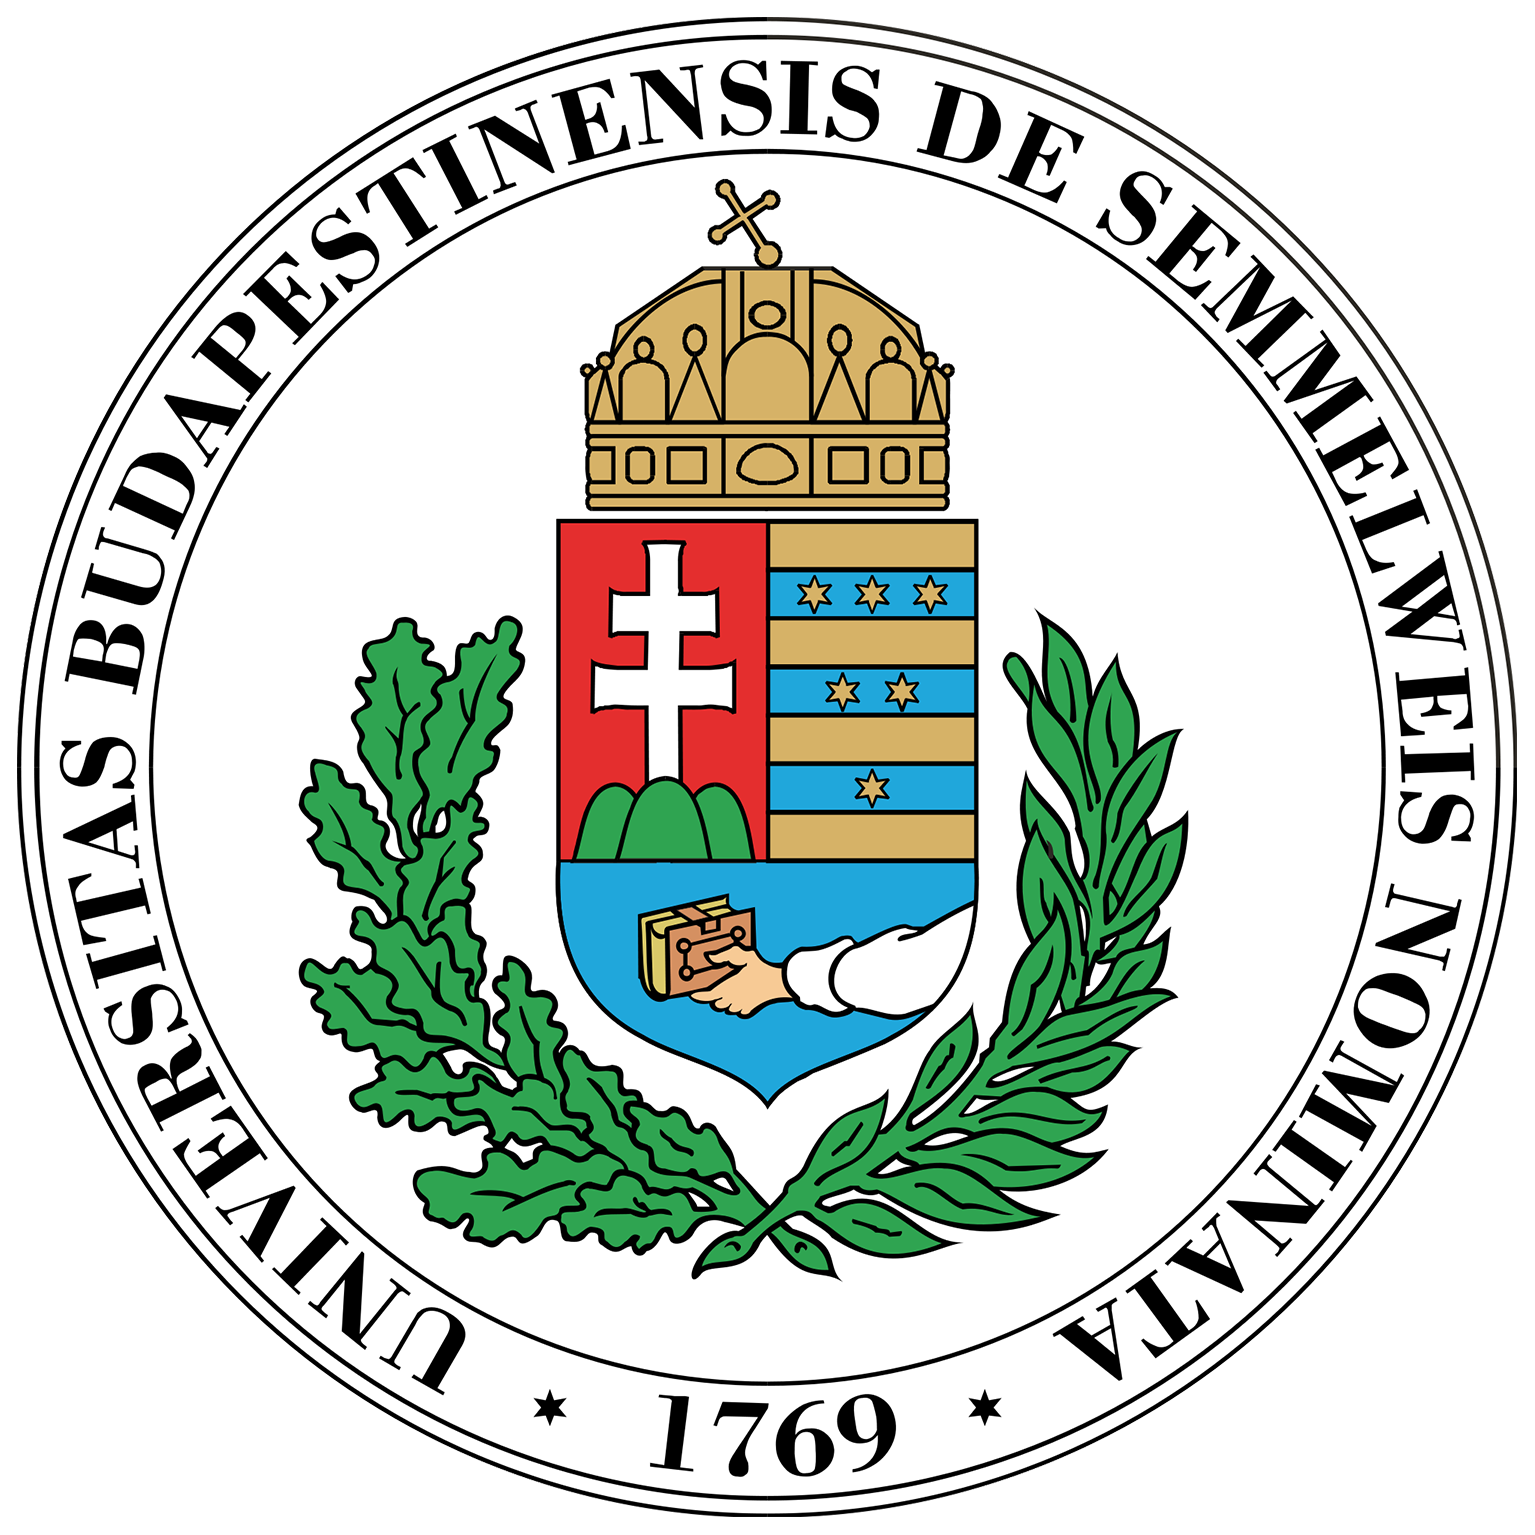 semmelweis universität logo